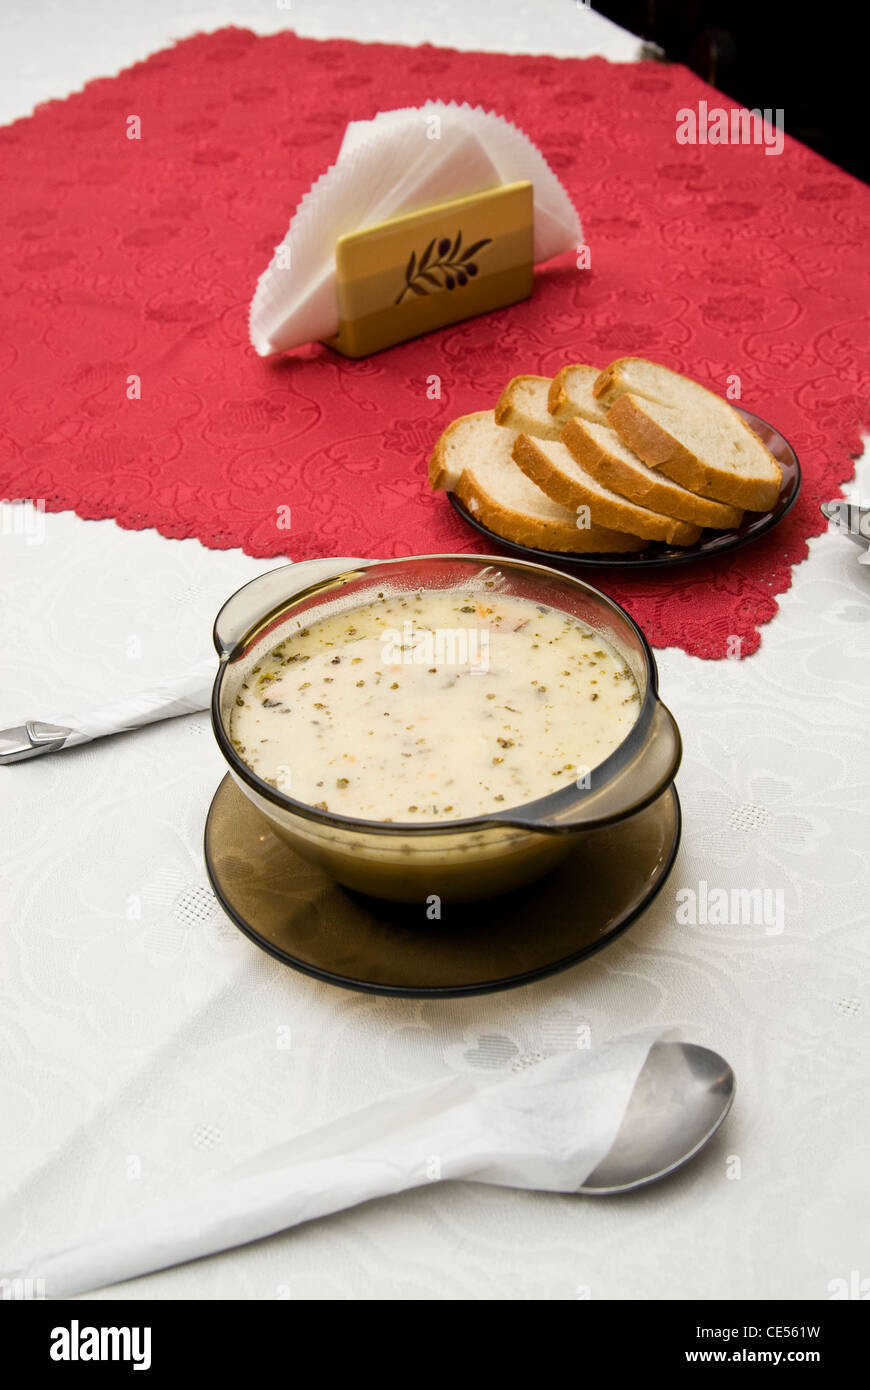 Polish sour rye soup Stock Photo